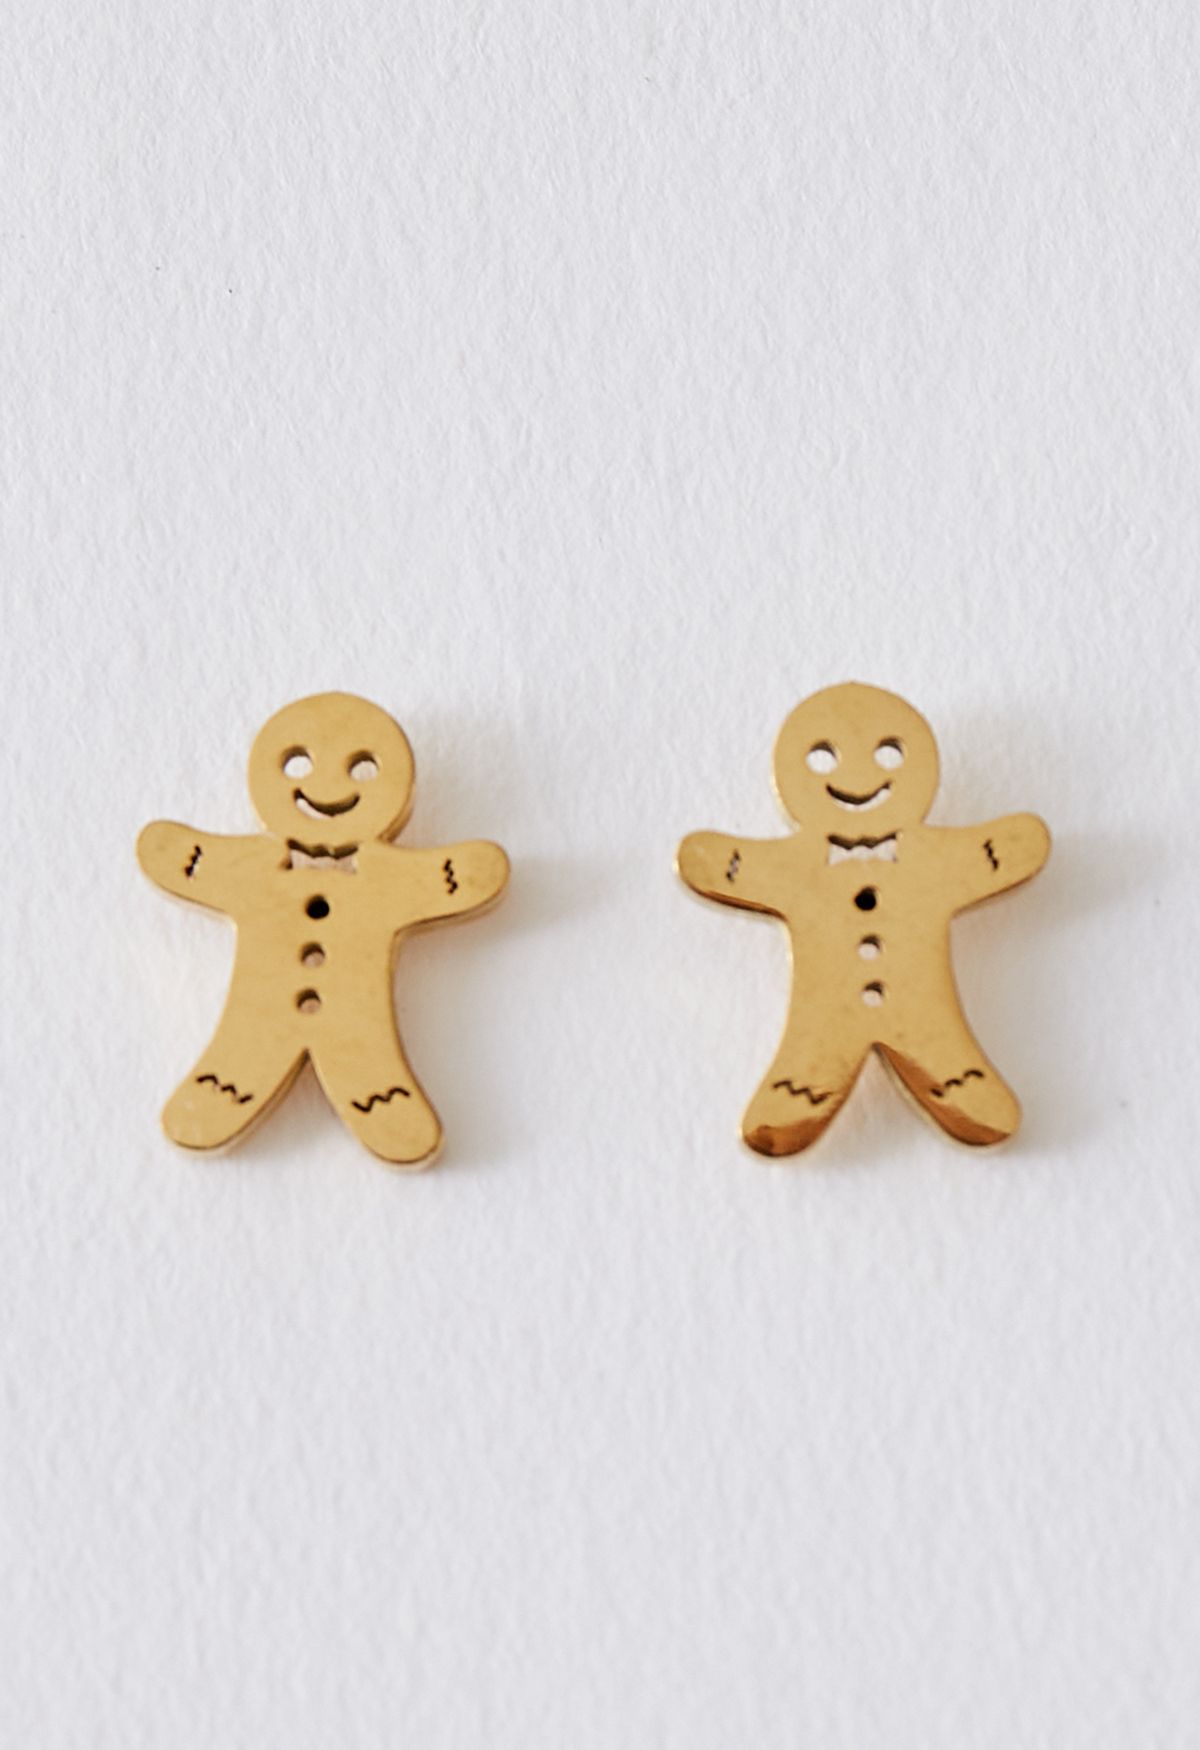 Cute Biscuit Man Earrings in Gold